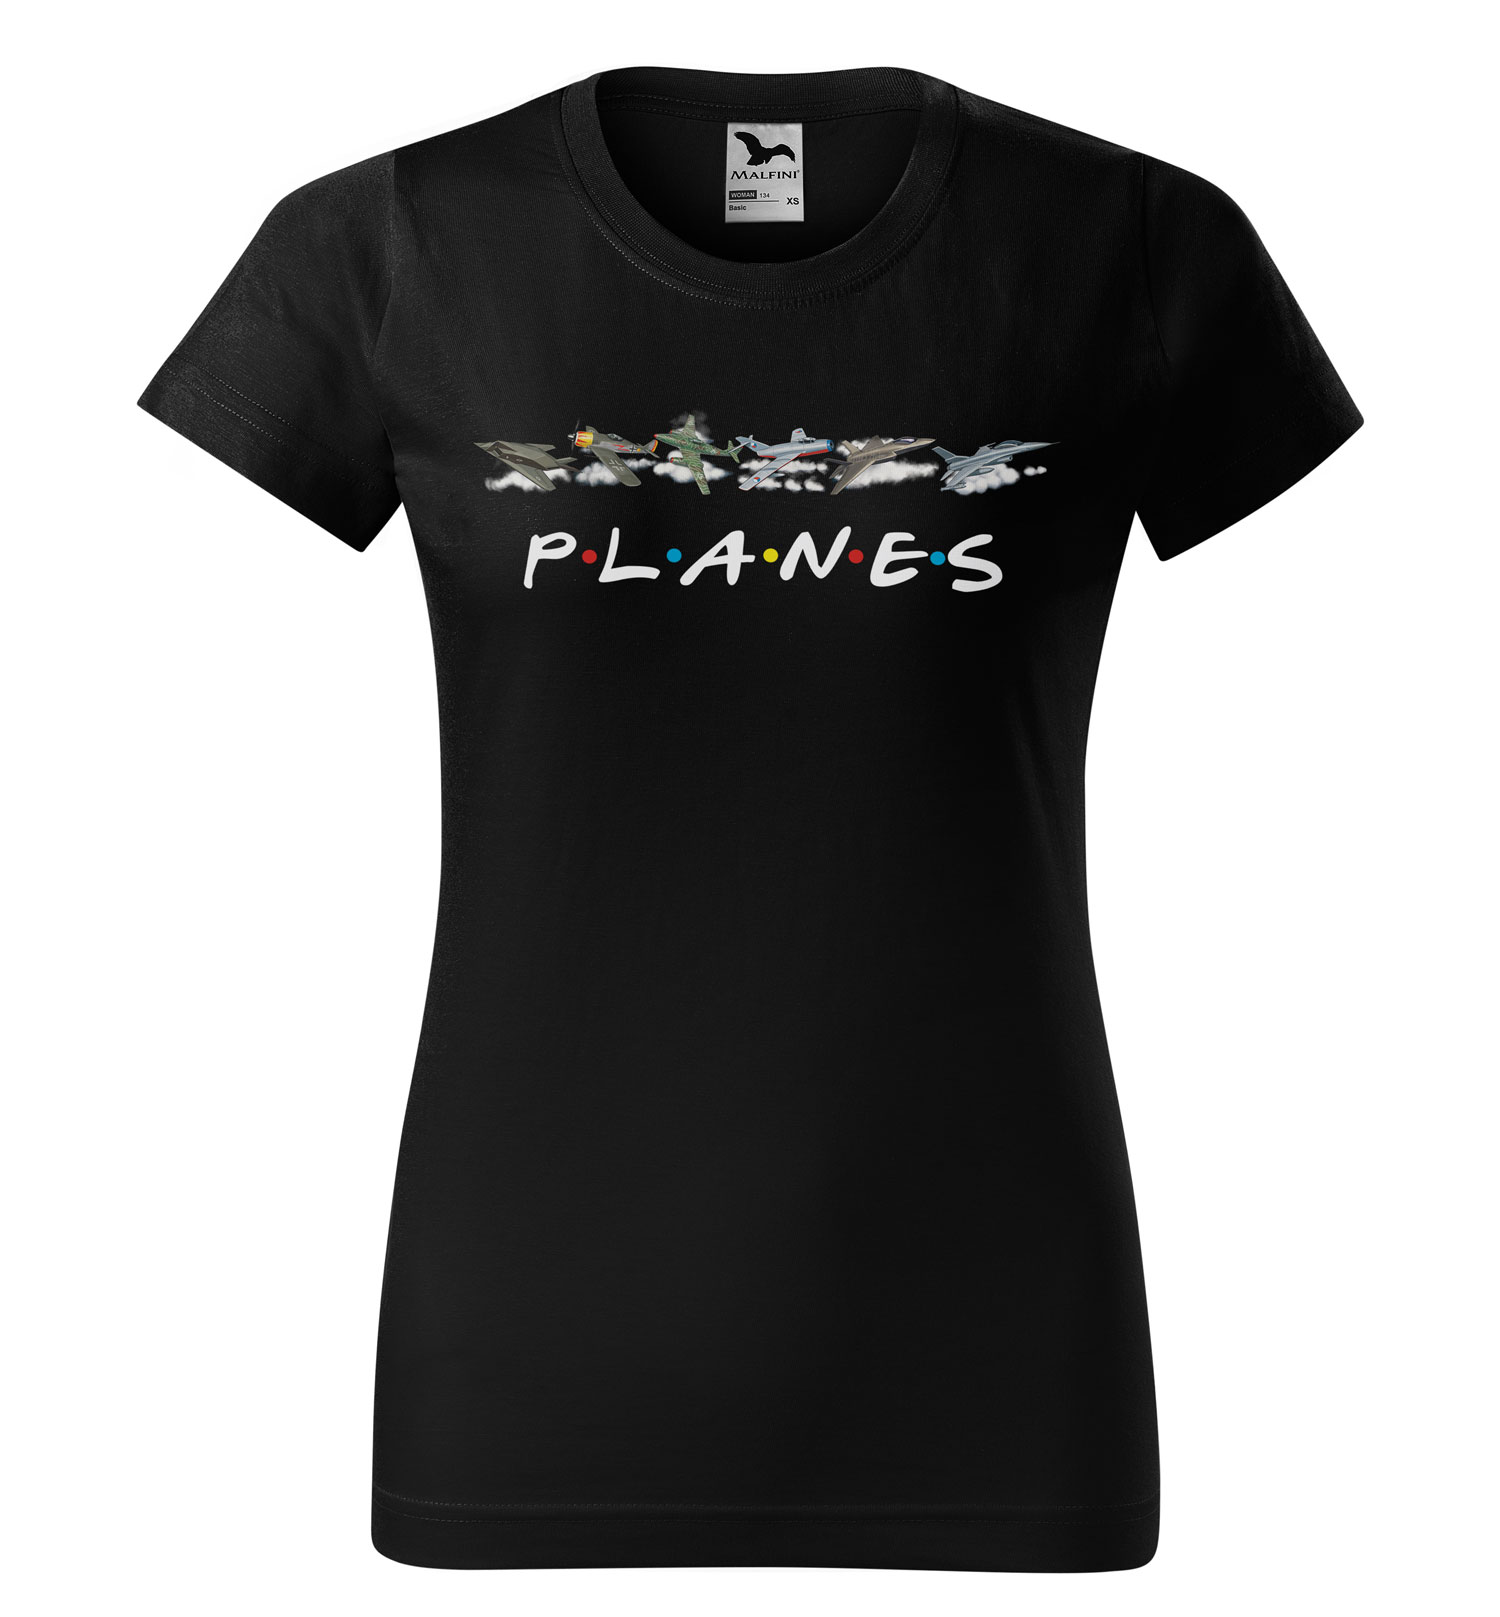 Tričko Planes (Velikost: M, Typ: pro ženy, Barva trička: Černá)